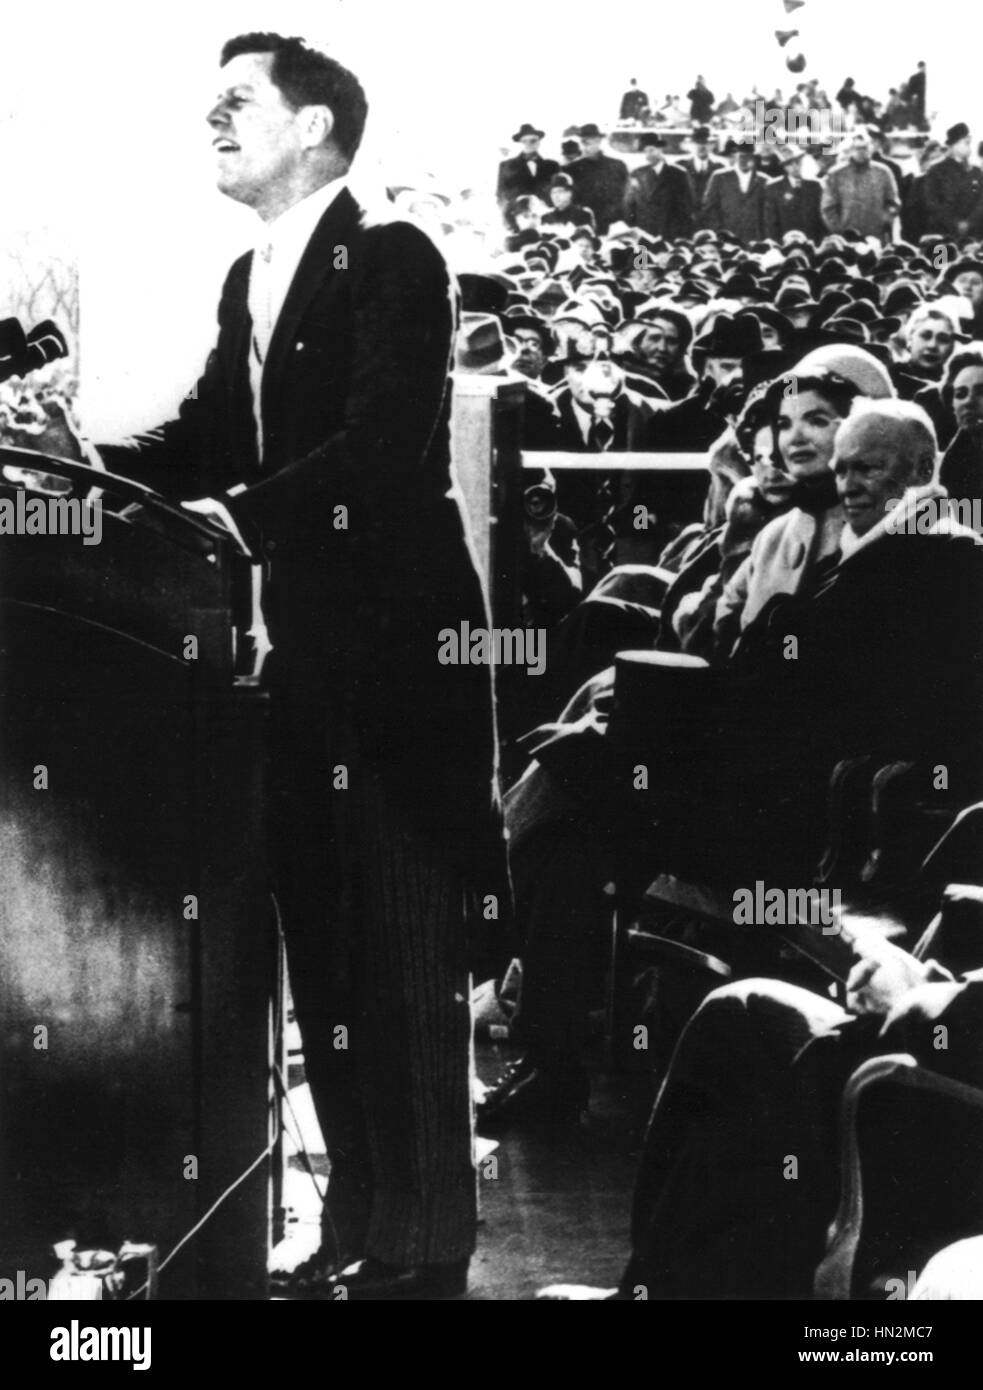 Discurso Inaugural de John Kennedy (detrás de él, Jacqueline Kennedy y Eisenhower) Enero 20, 1961 Los Archivos Nacionales de Estados Unidos. Washington Foto de stock